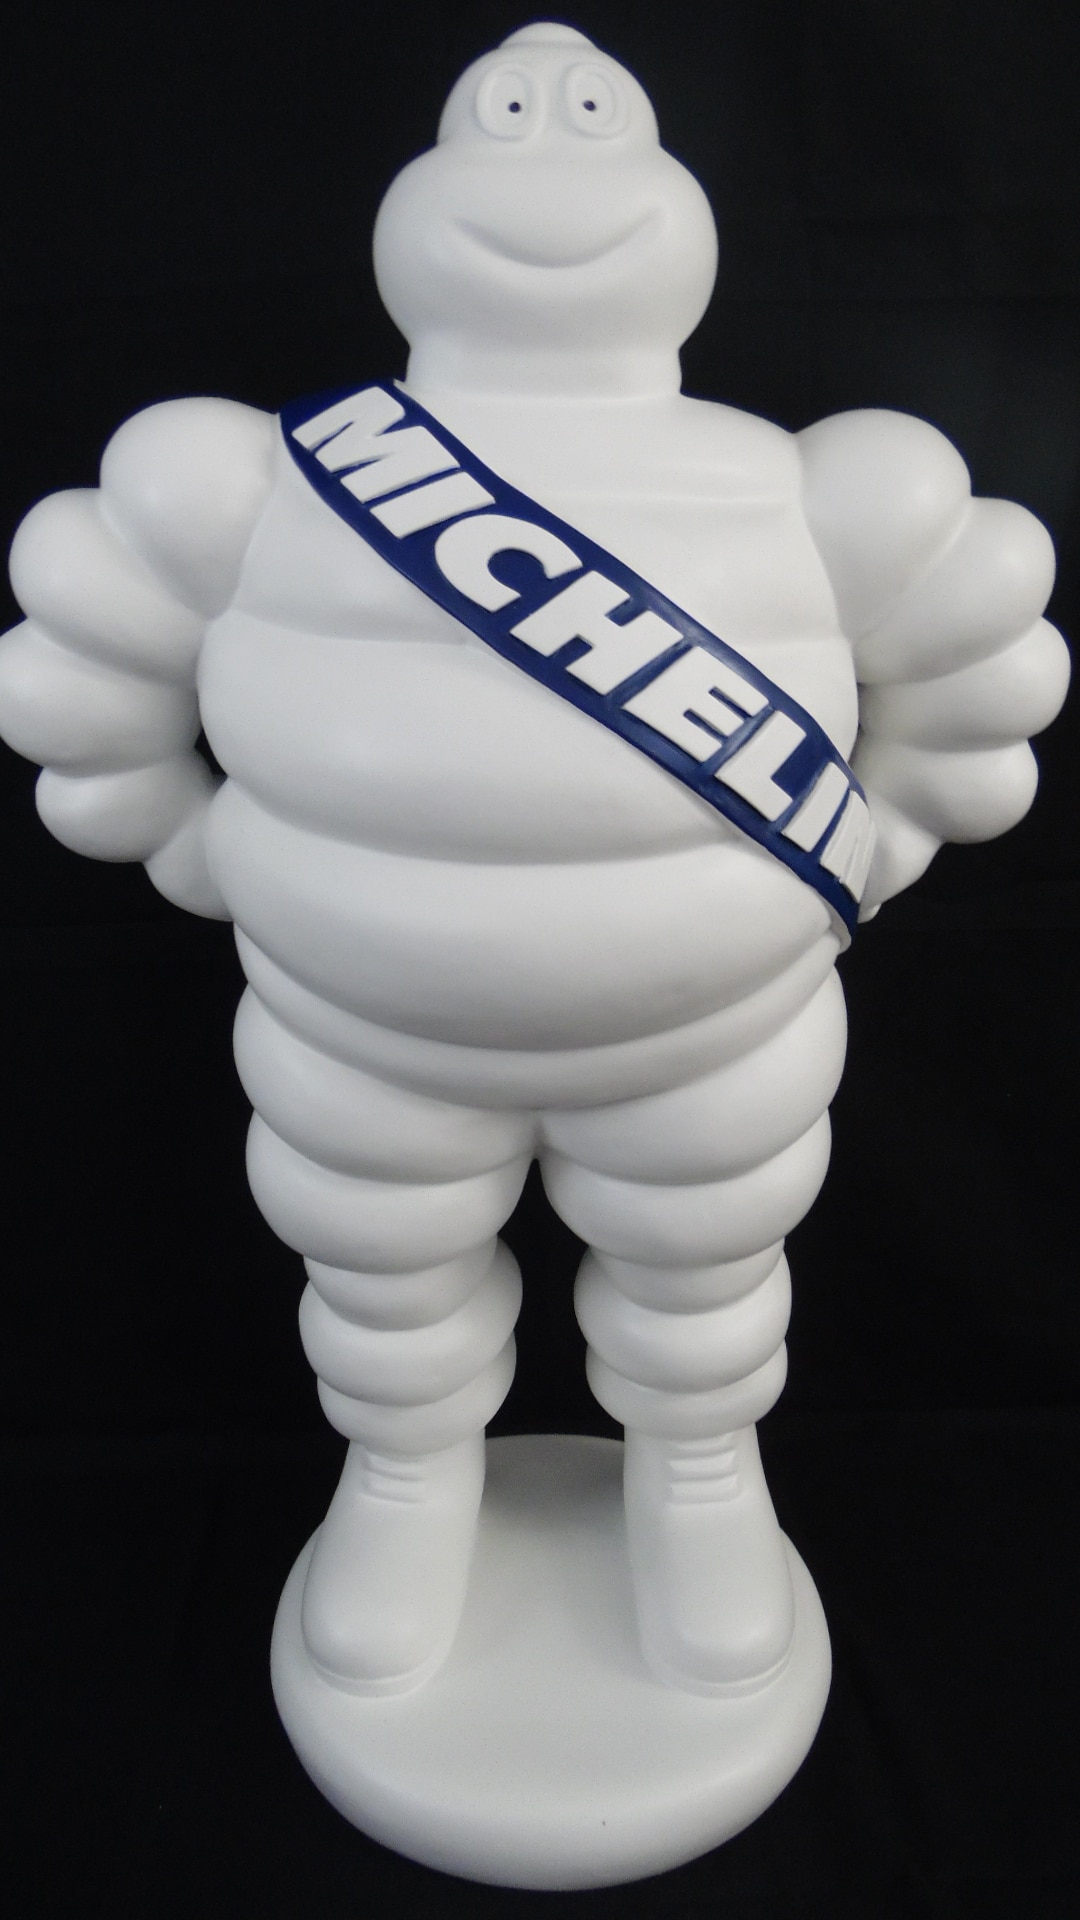 Produits Bibendum Michelin pour personnaliser son Poids Lourds